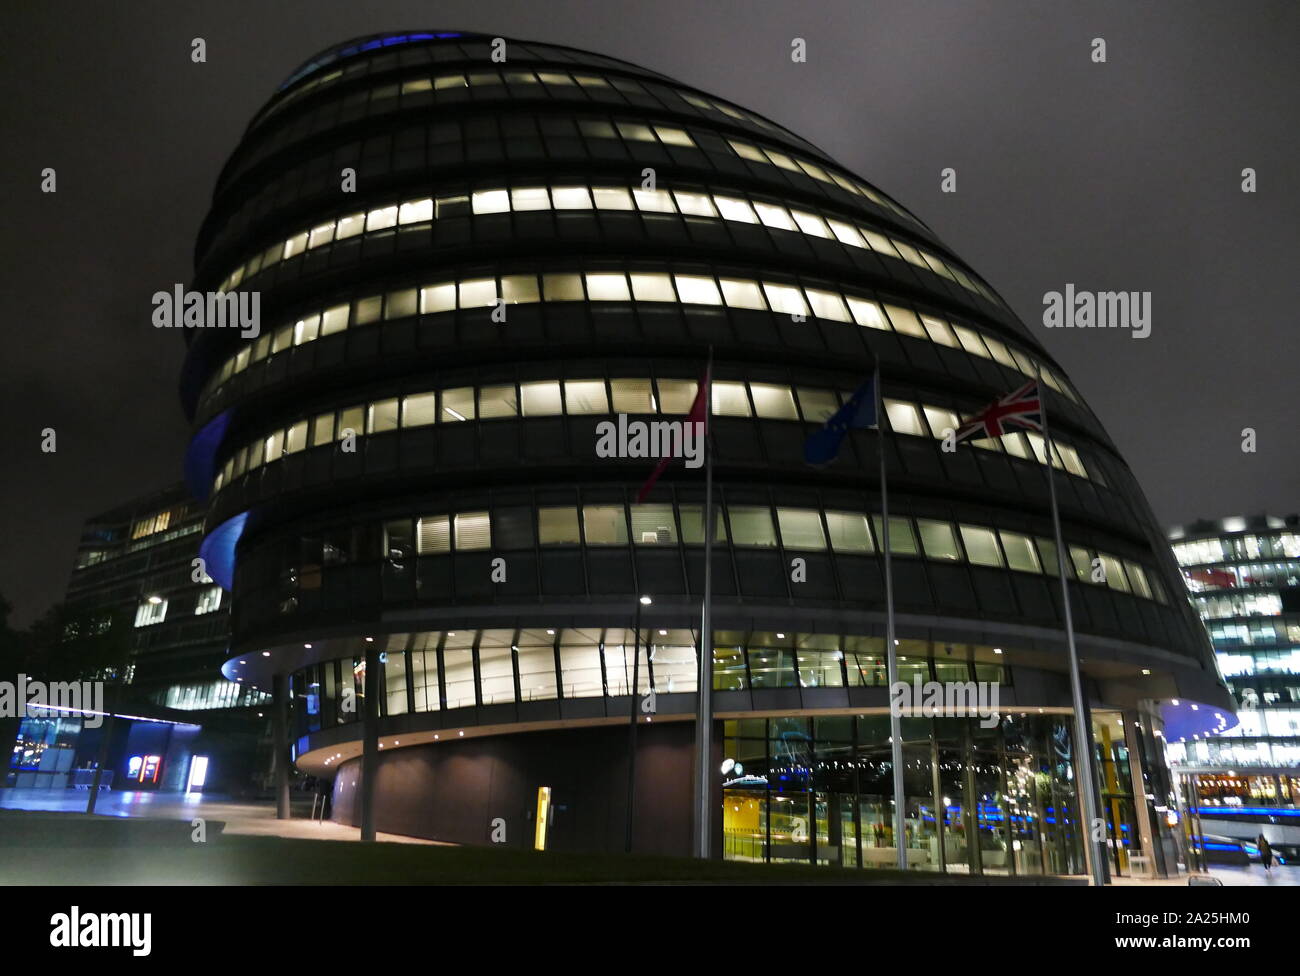 City Hall, sede de la Greater London Authority (GLA), que se compone del Alcalde de Londres y la Asamblea de Londres. Se encuentra en Southwark, en la orilla sur del río Támesis, cerca del Puente de la torre. Fue diseñado por Norman Foster e inaugurado en julio de 2002, Foto de stock